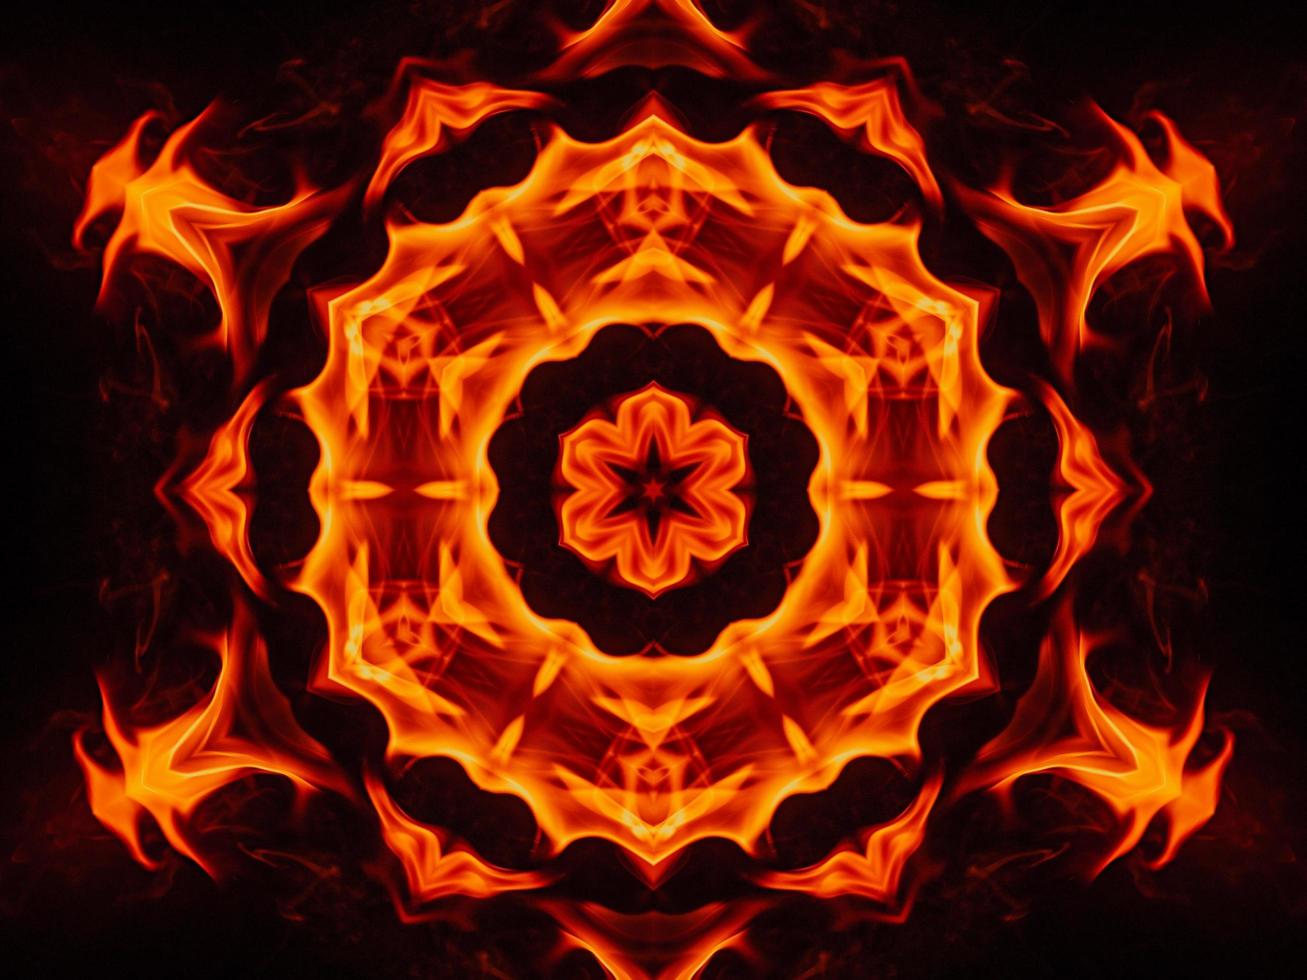 sfondo astratto unico. modello caleidoscopio di fiamme arancioni. foto gratis